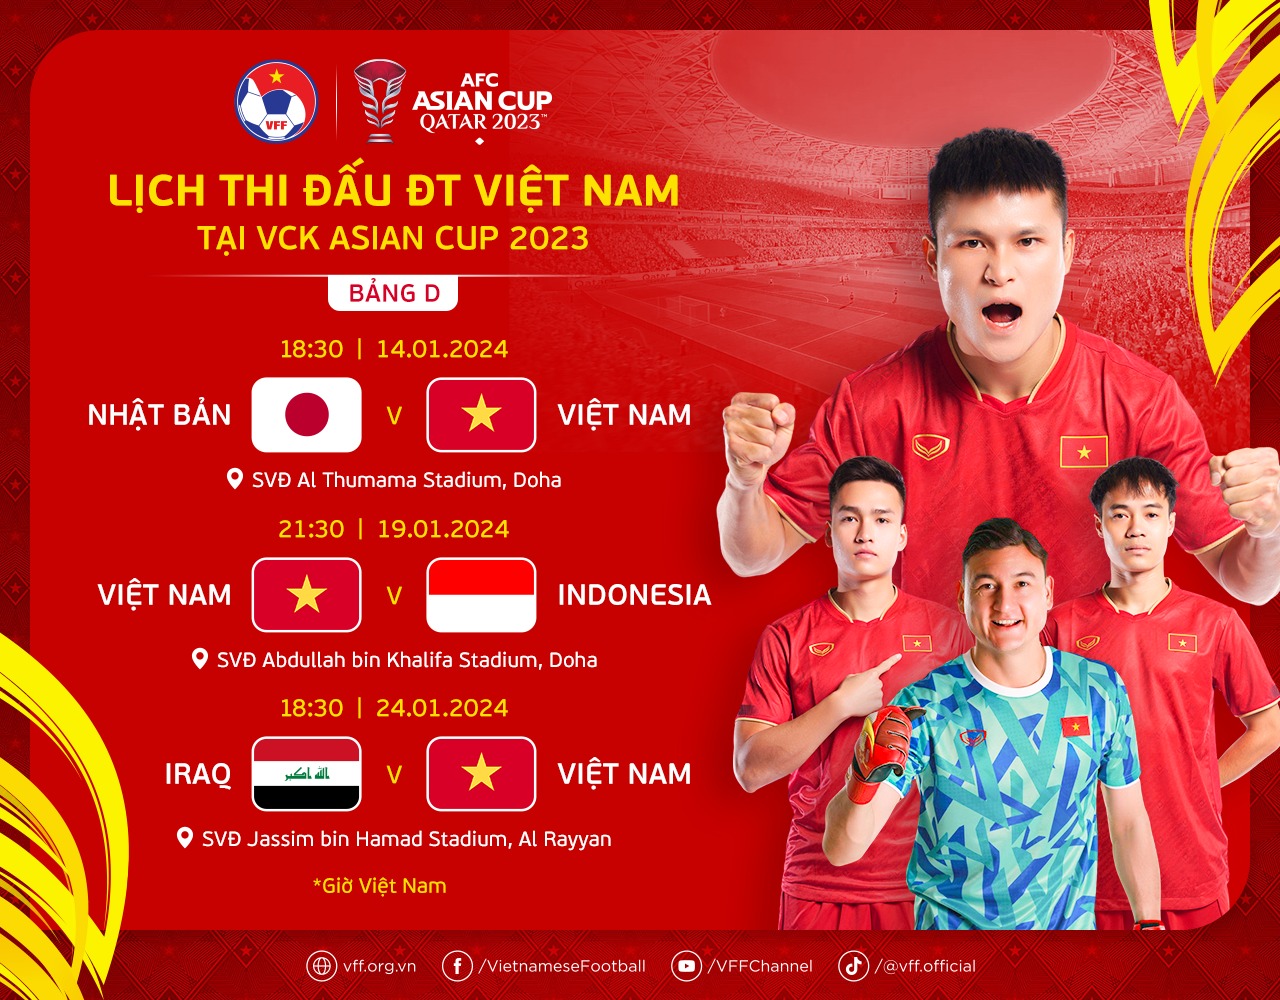 HLV Troussier quay lại Việt Nam khi nào, lịch đấu đội tuyển tại Asian Cup ra sao? - Ảnh 2.